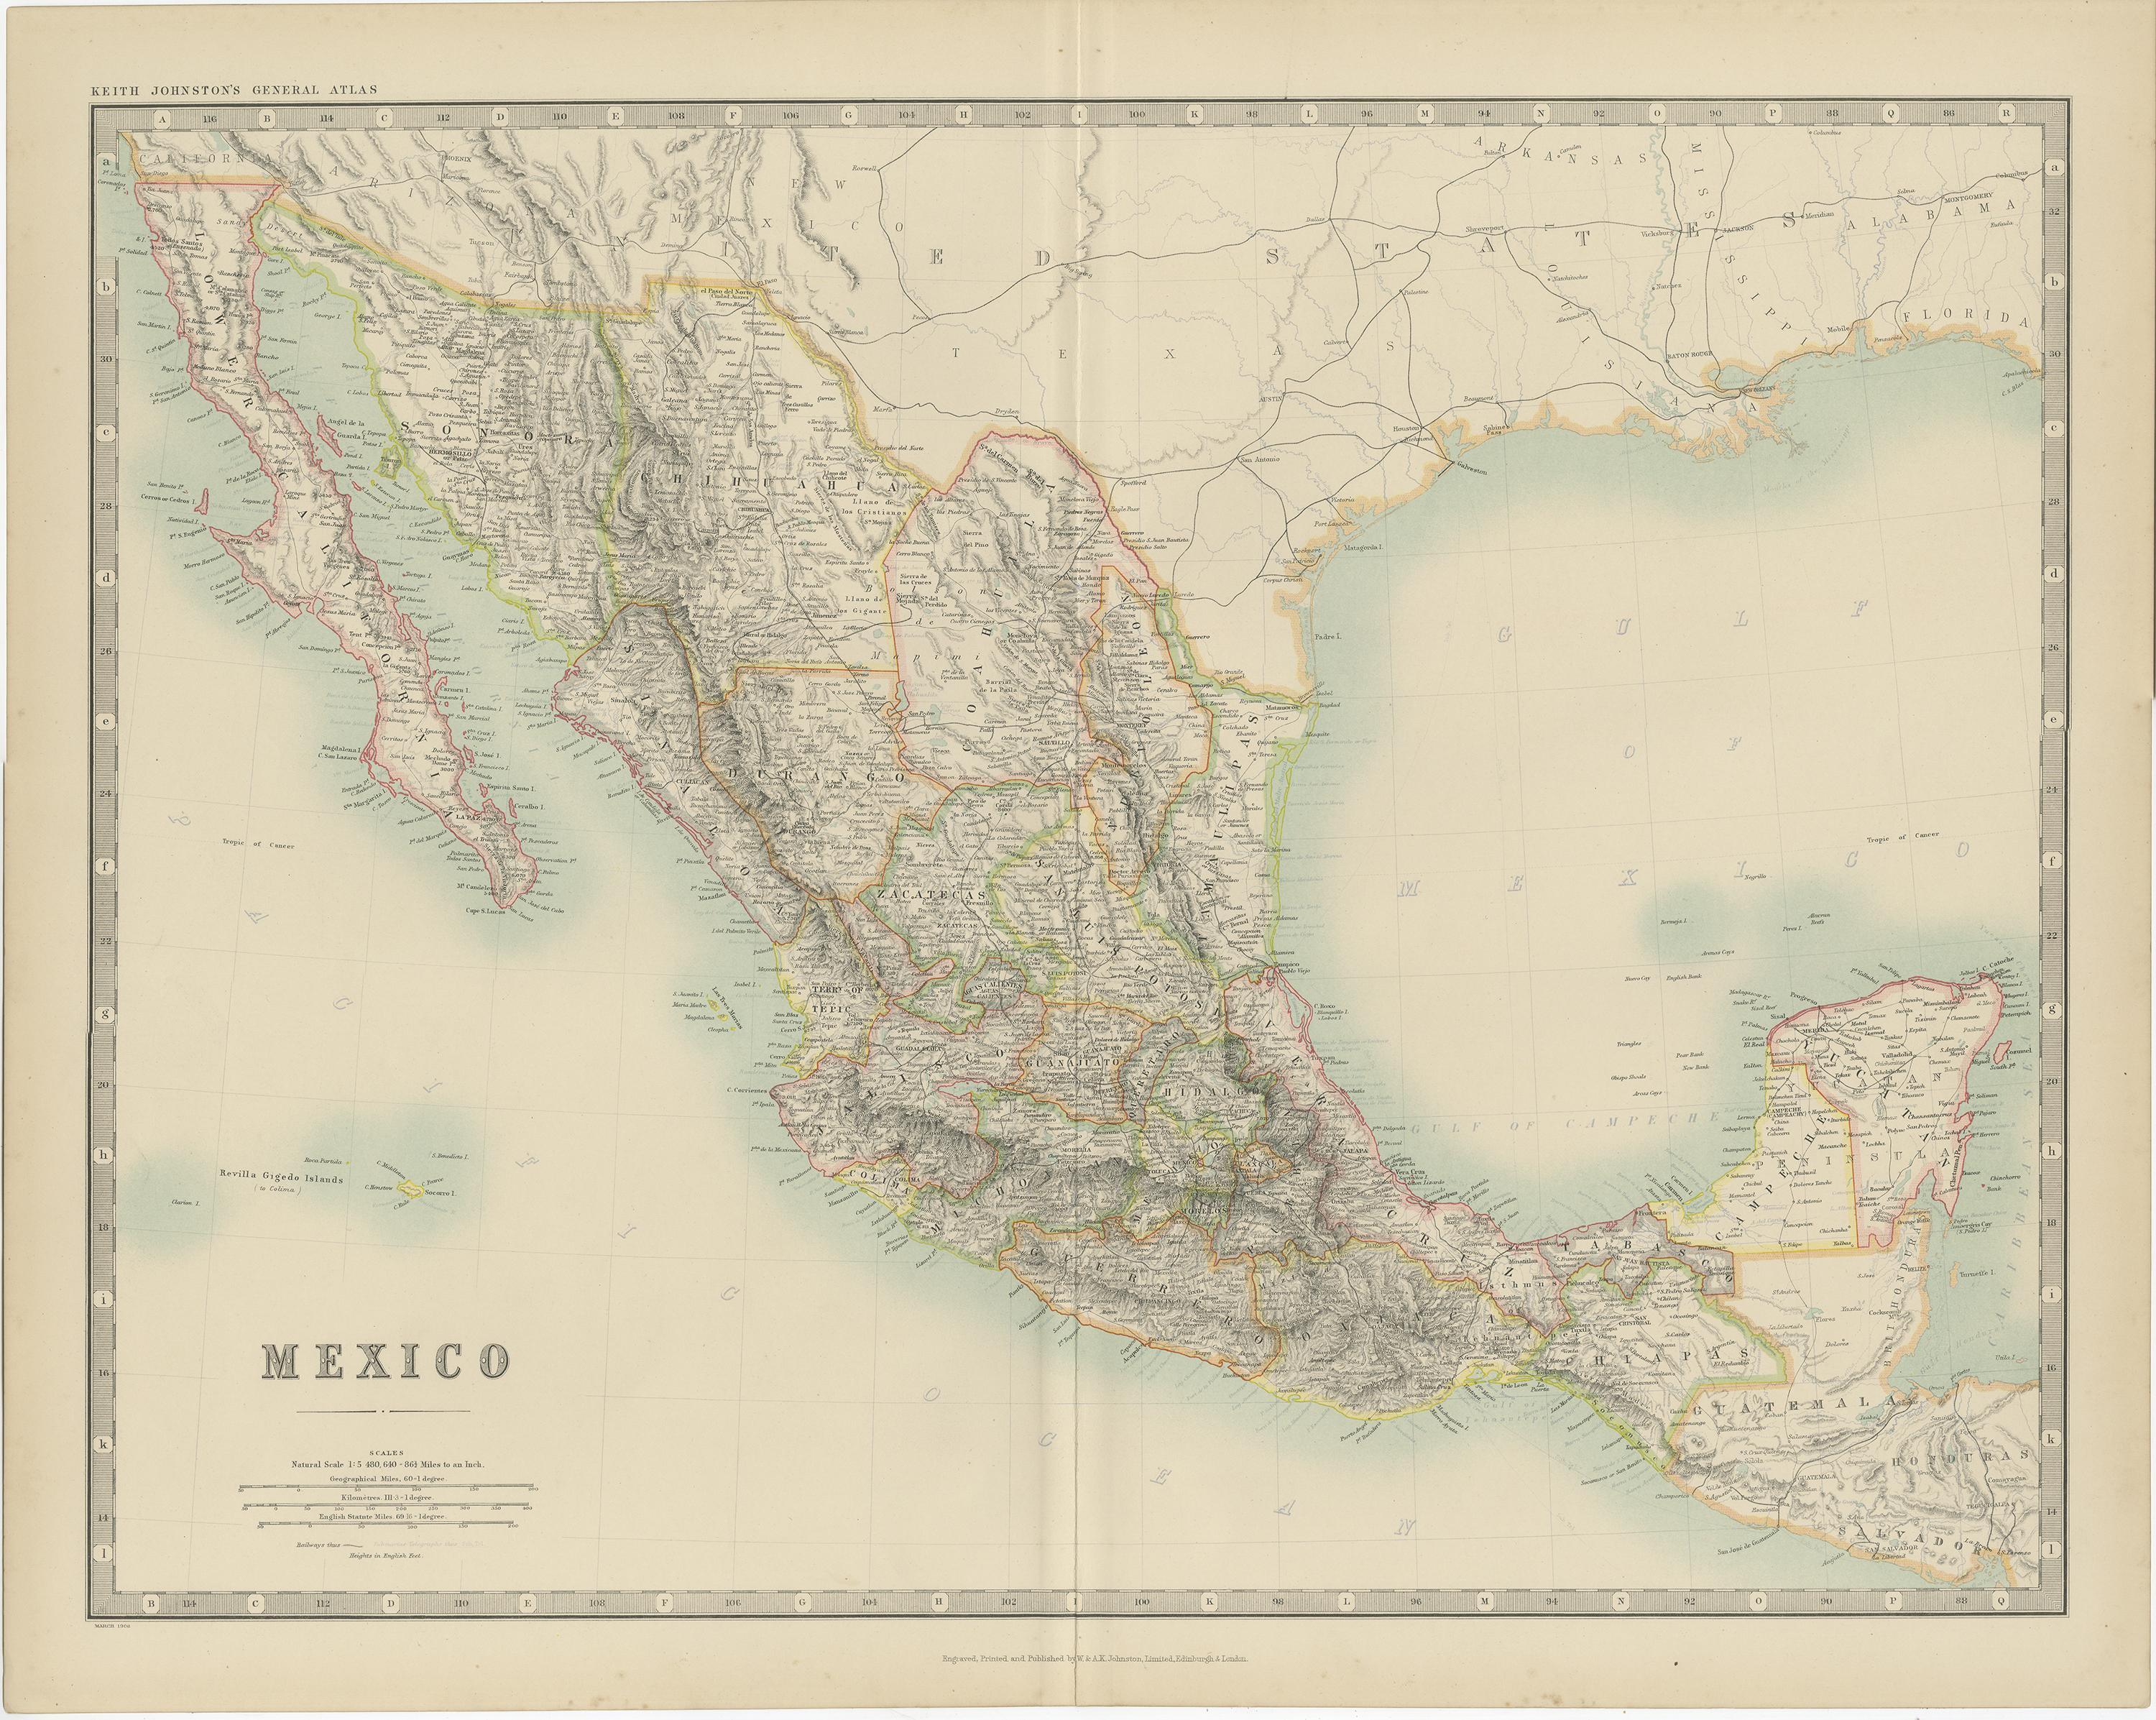 Antike Karte mit dem Titel 'Mexiko'. Original antike Landkarte von Mexiko. Diese Karte stammt aus dem 